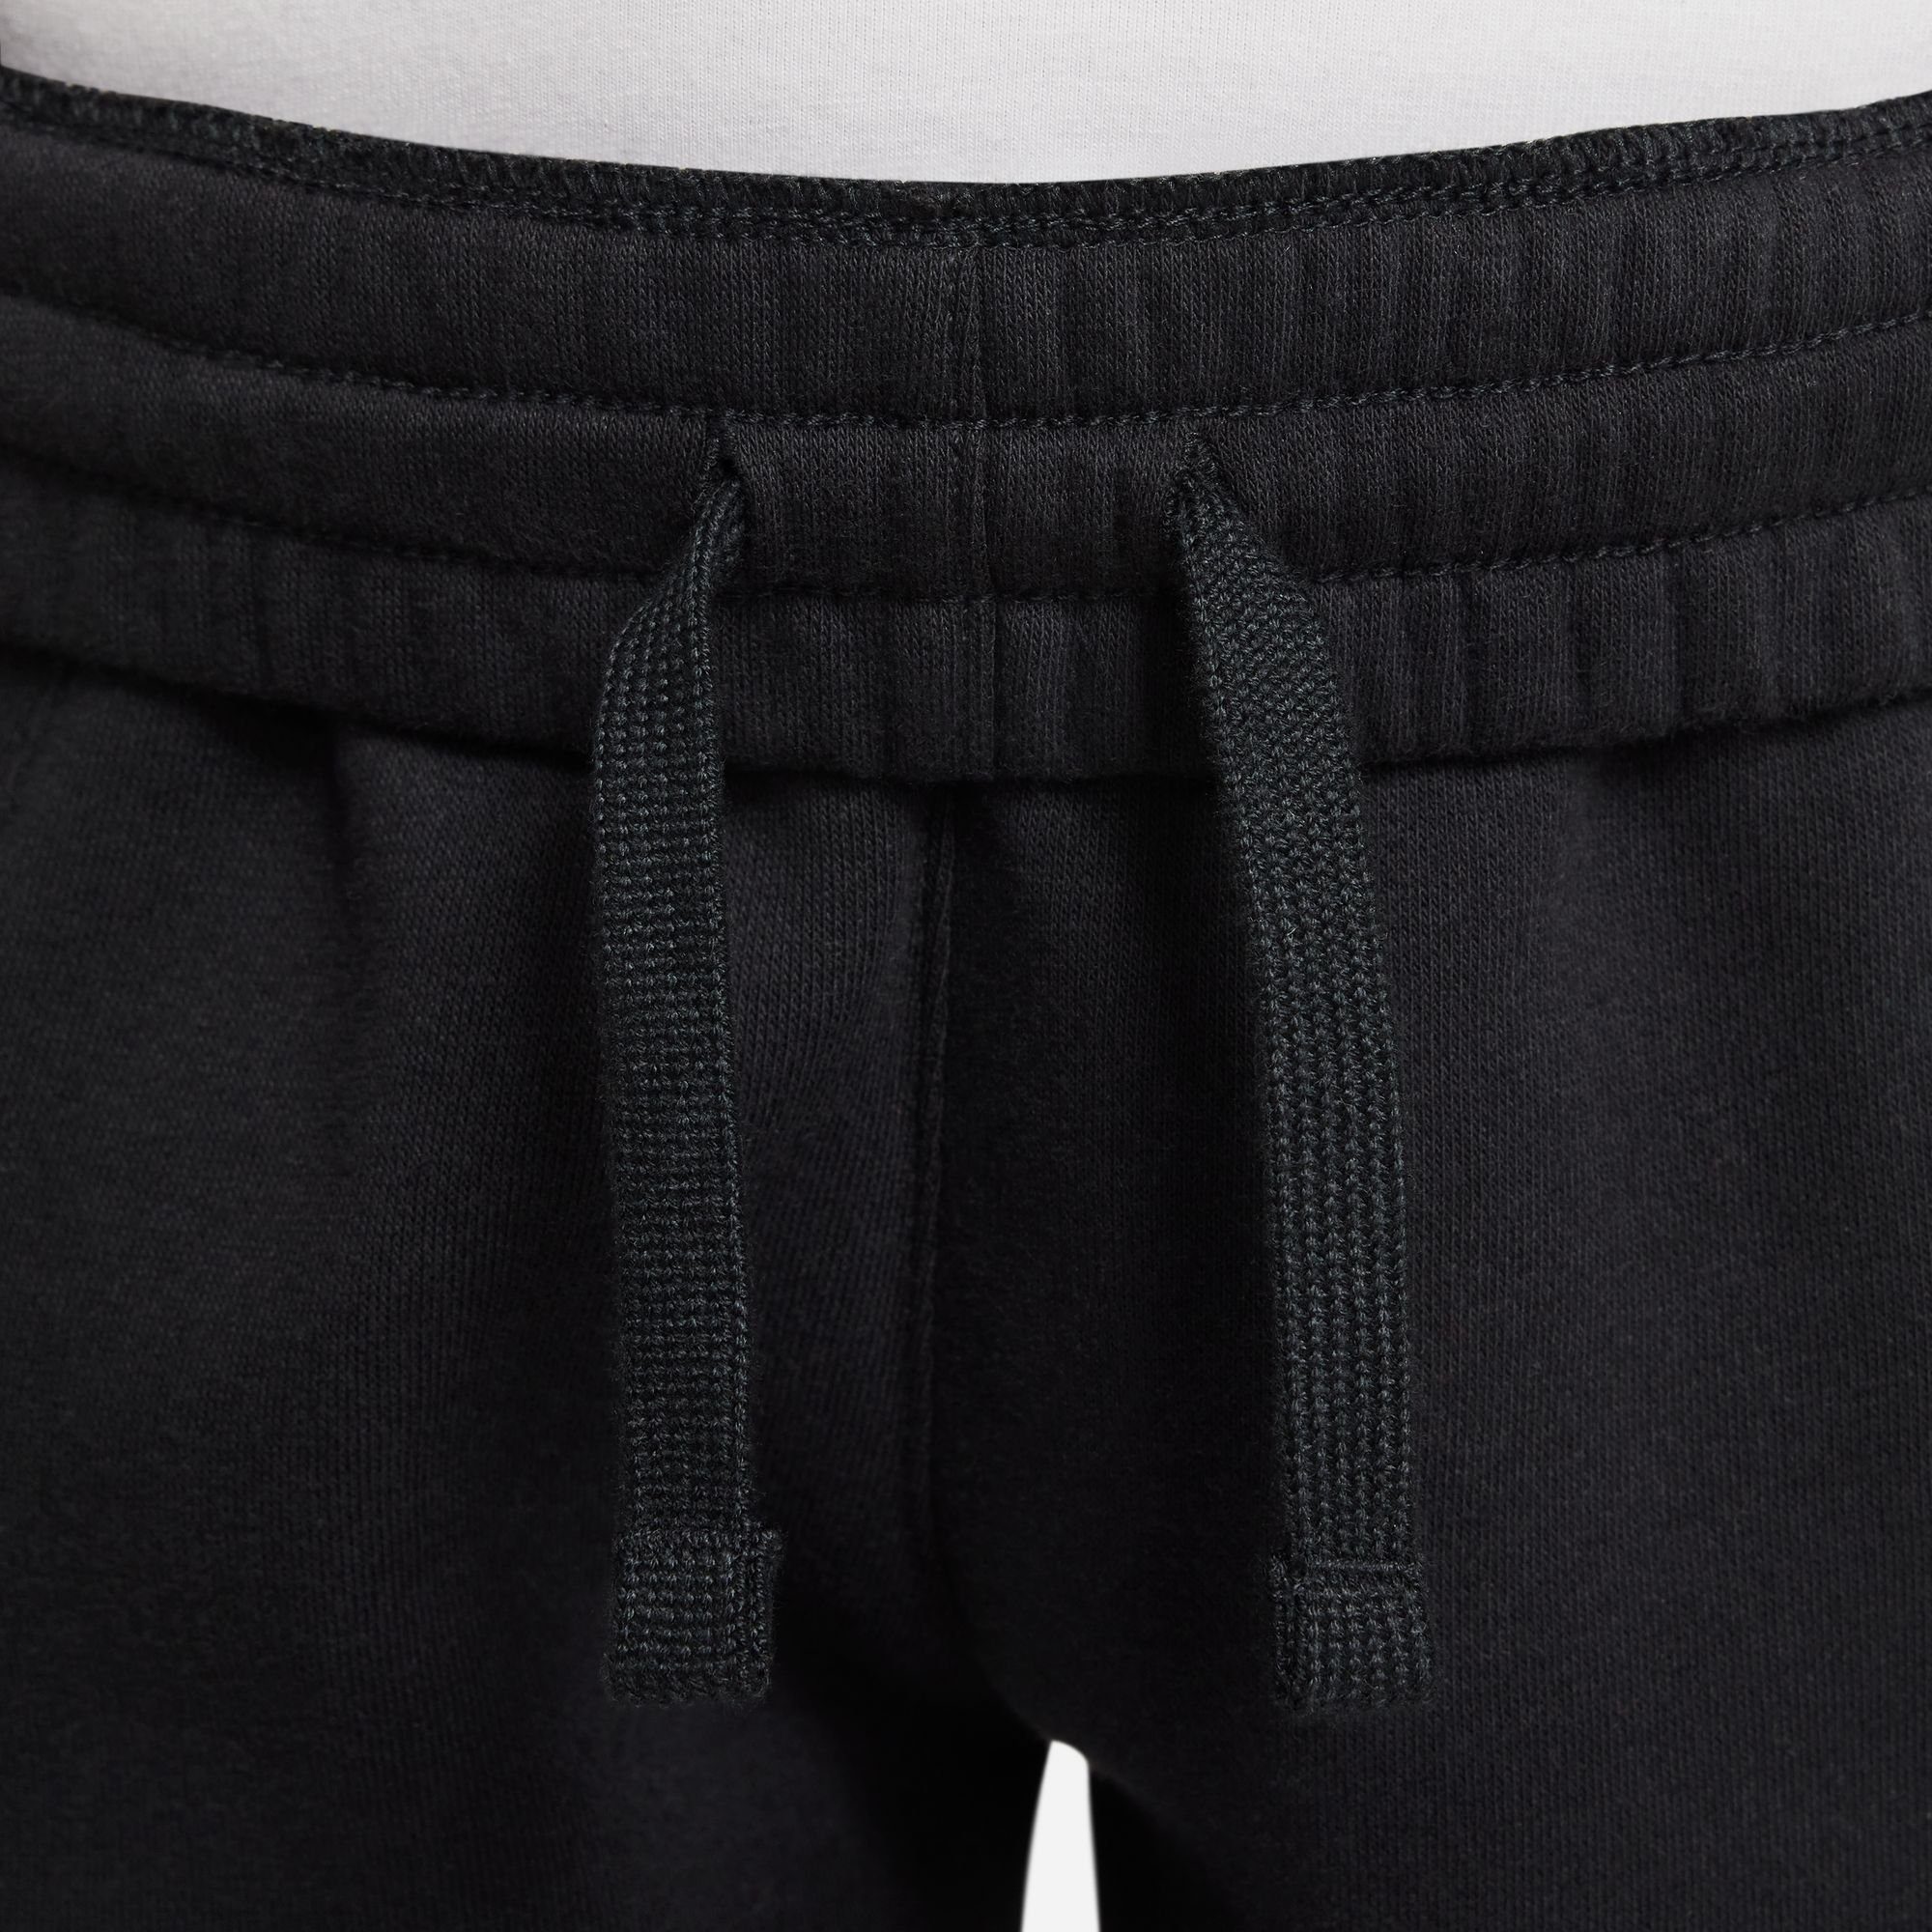 PANTS KIDS' Nike Jogginghose JOGGER CLUB FLEECE BLACK/WHITE BIG Sportswear